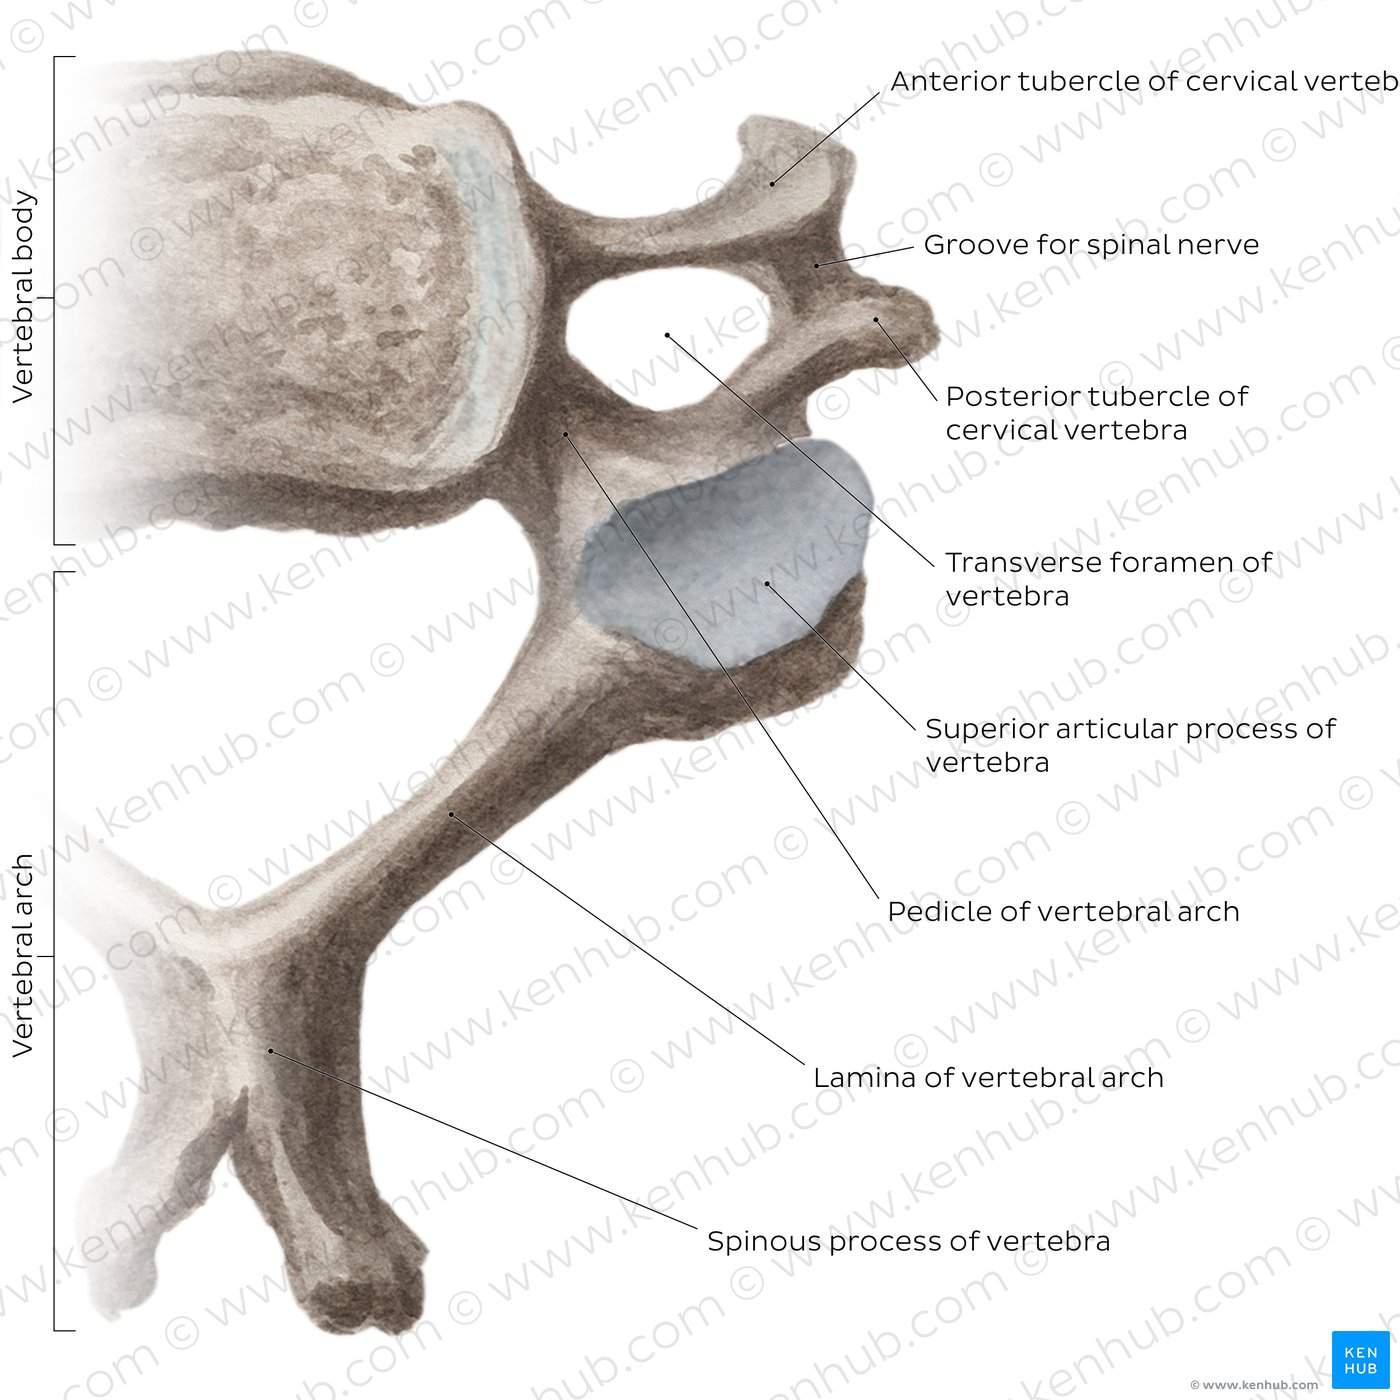 Typical cervical vertebra